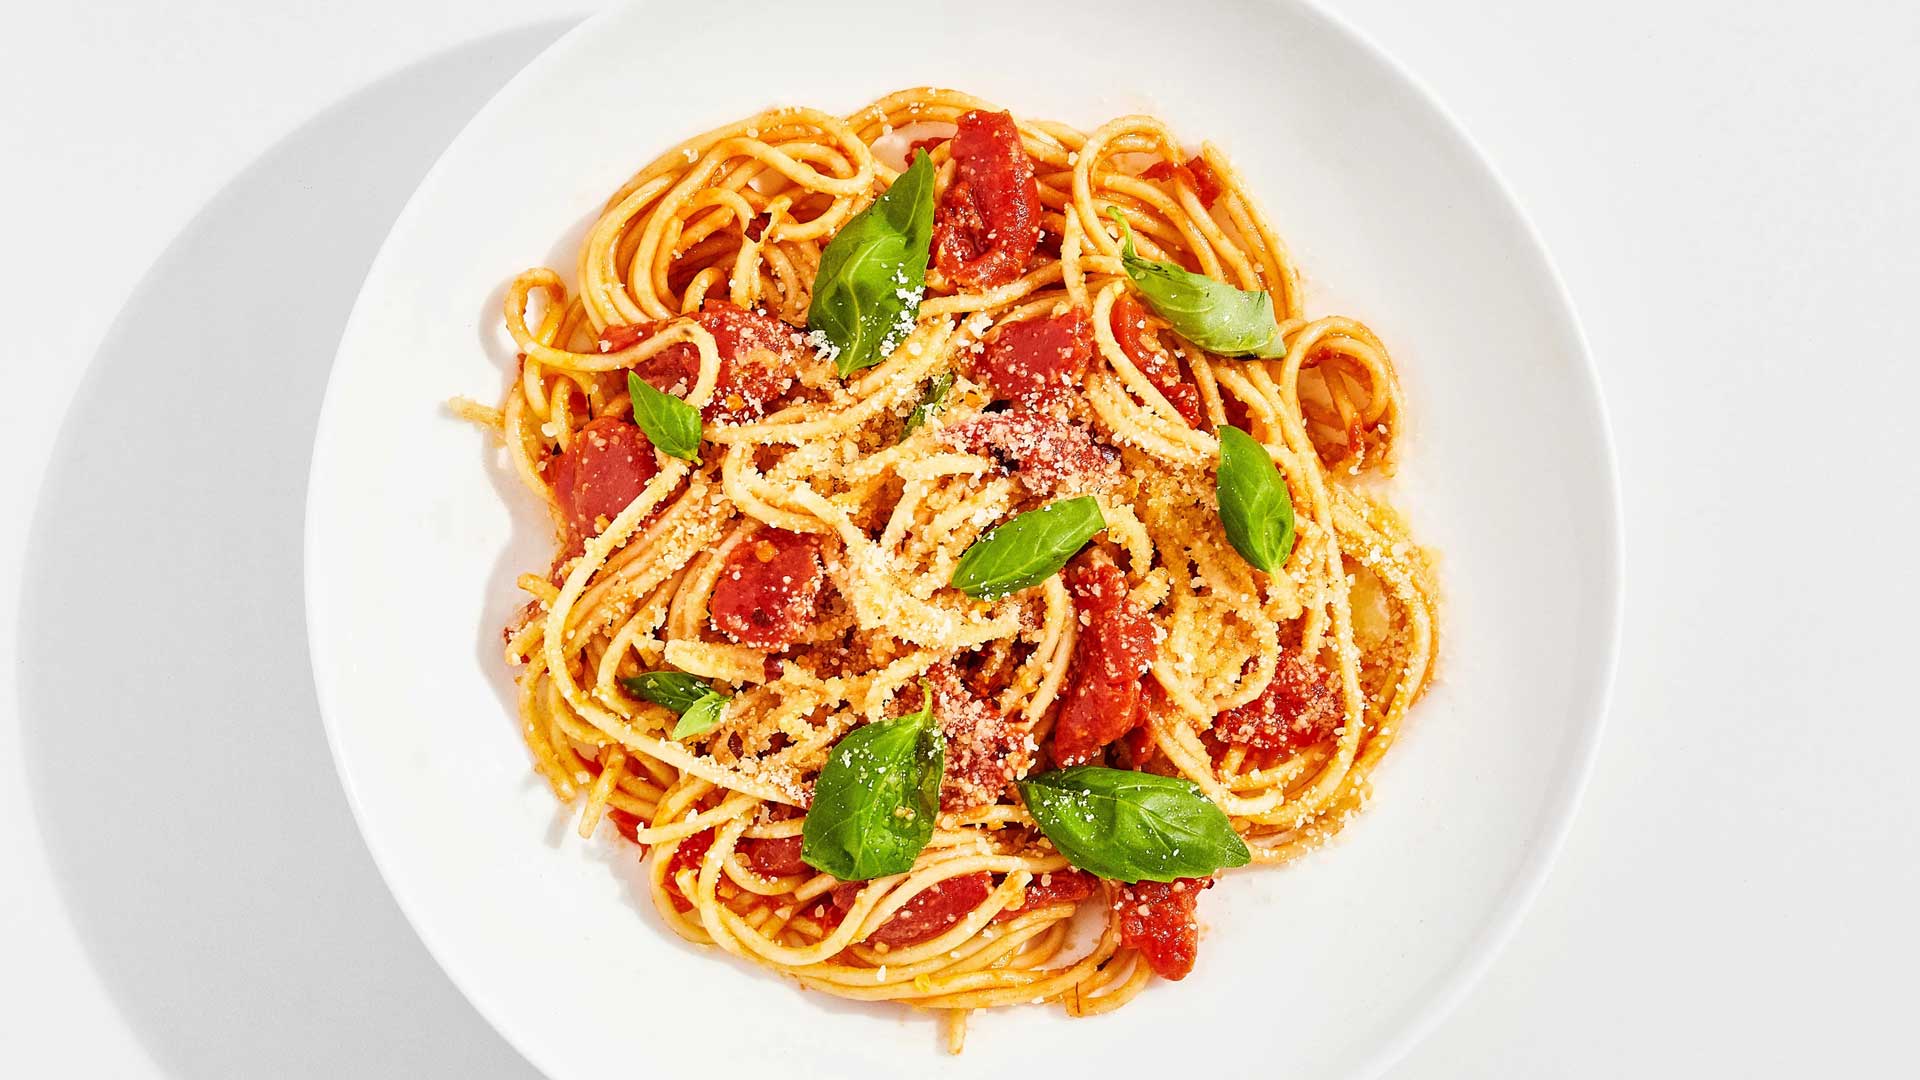 matteo-thun-cucina-la-pasta-al-pomodoro-robb-report-italia